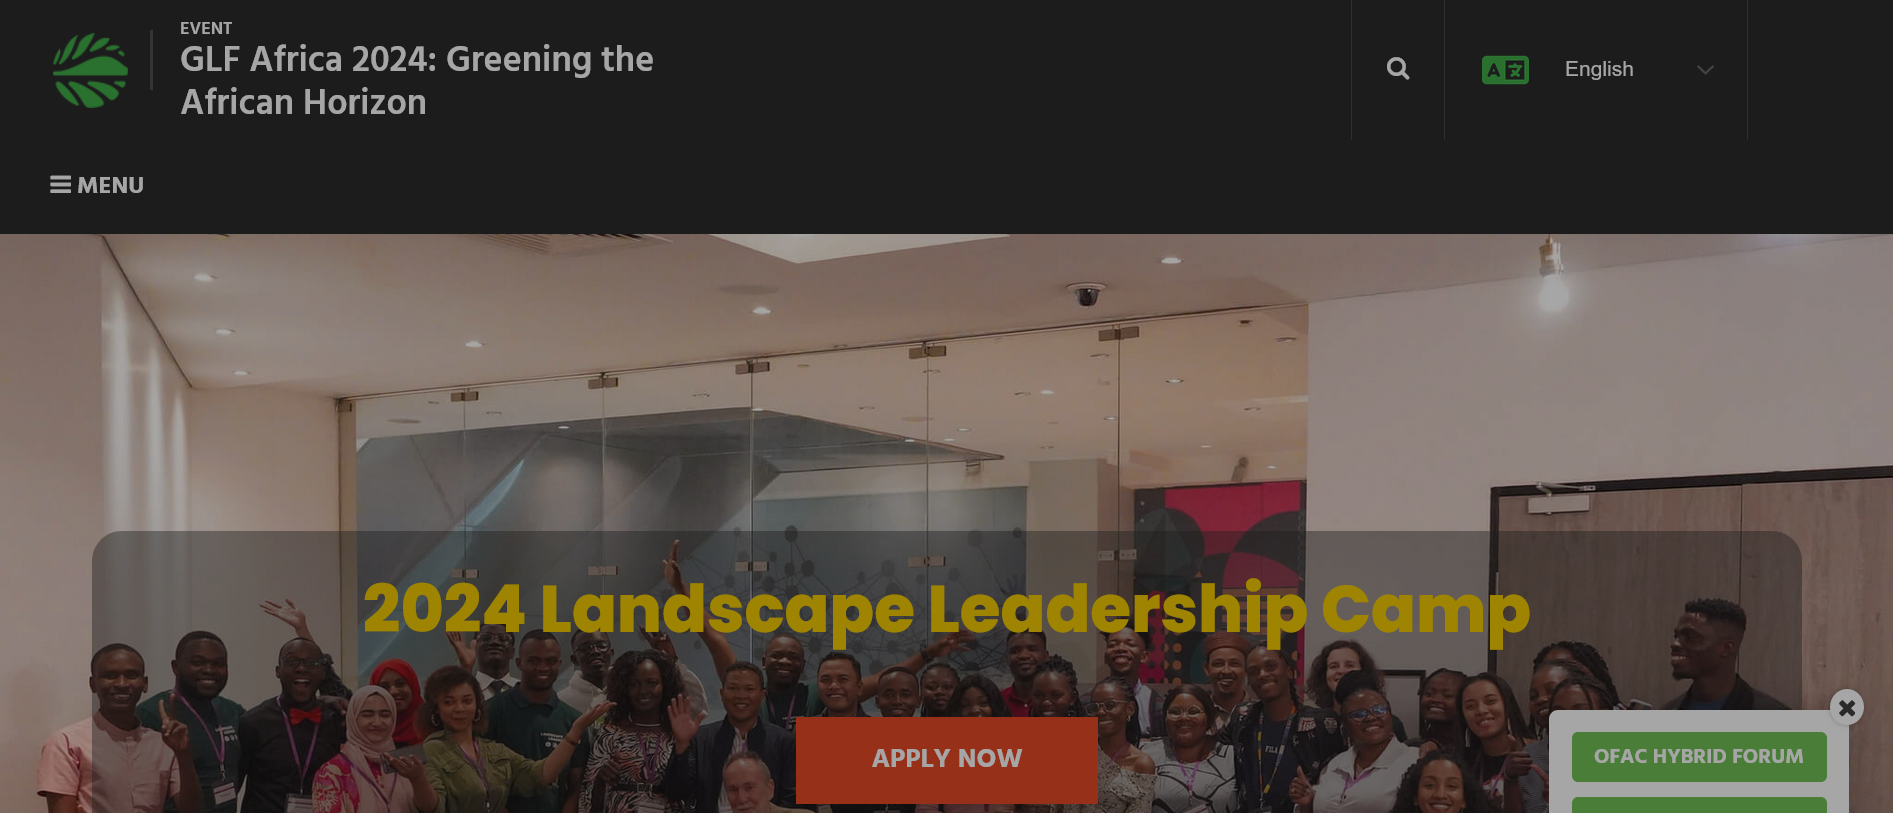 2024 Landscape Leadership Camp by Global Landscapes Forum (GLF)